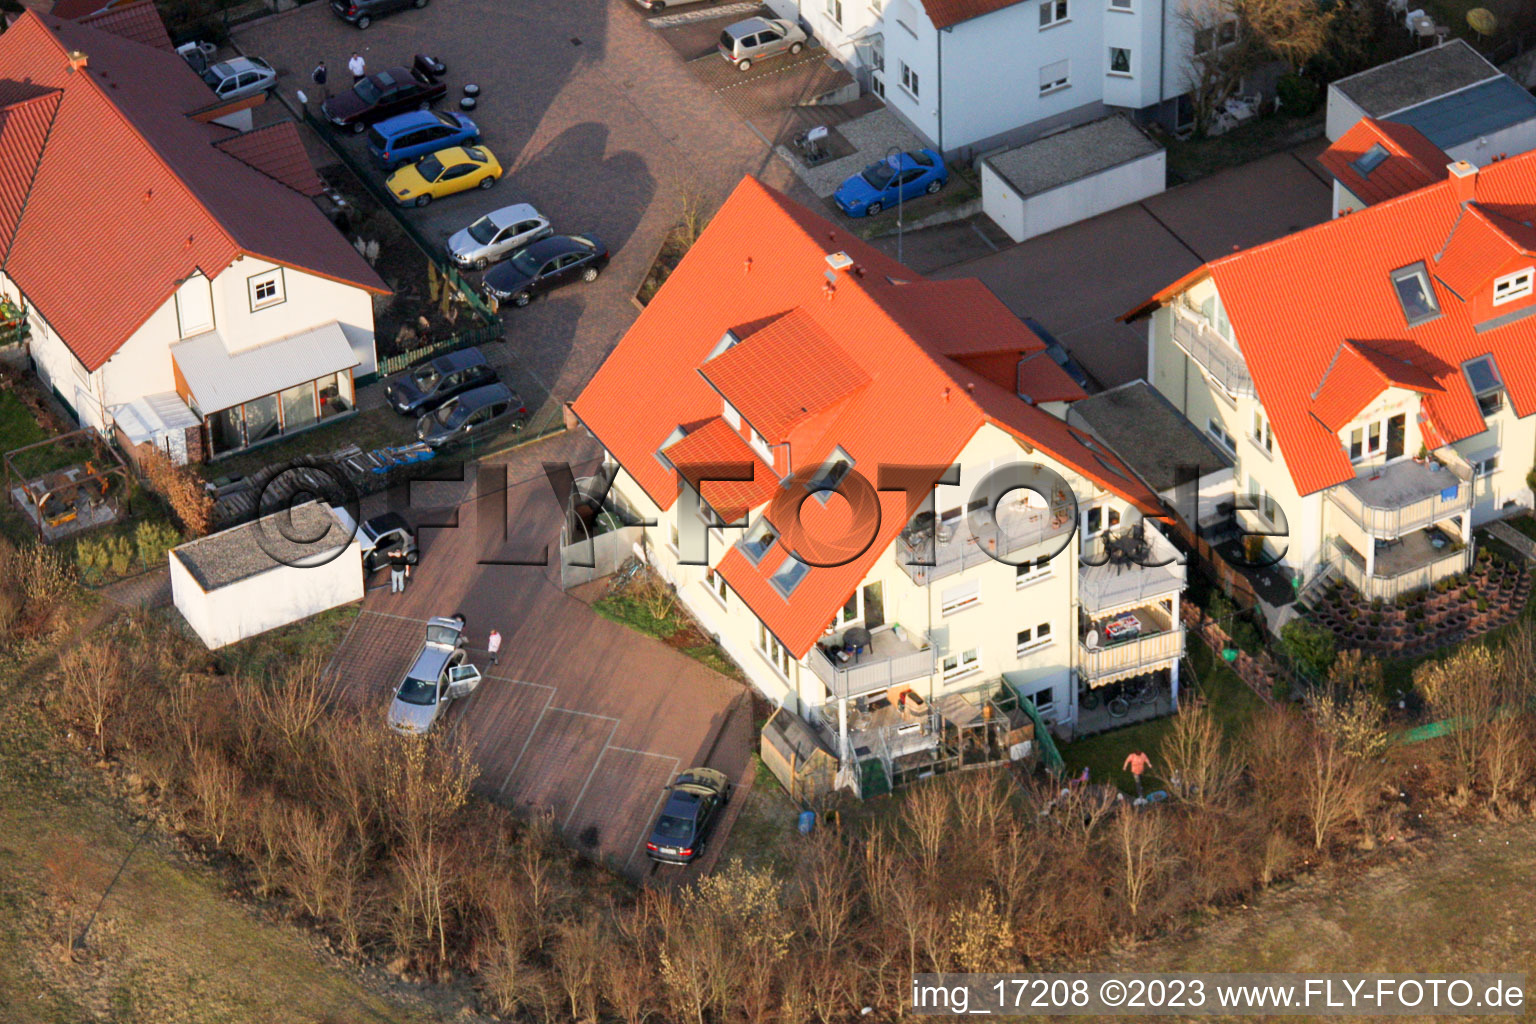 Nouvelle zone de développement O à Bellheim dans le département Rhénanie-Palatinat, Allemagne vue d'en haut